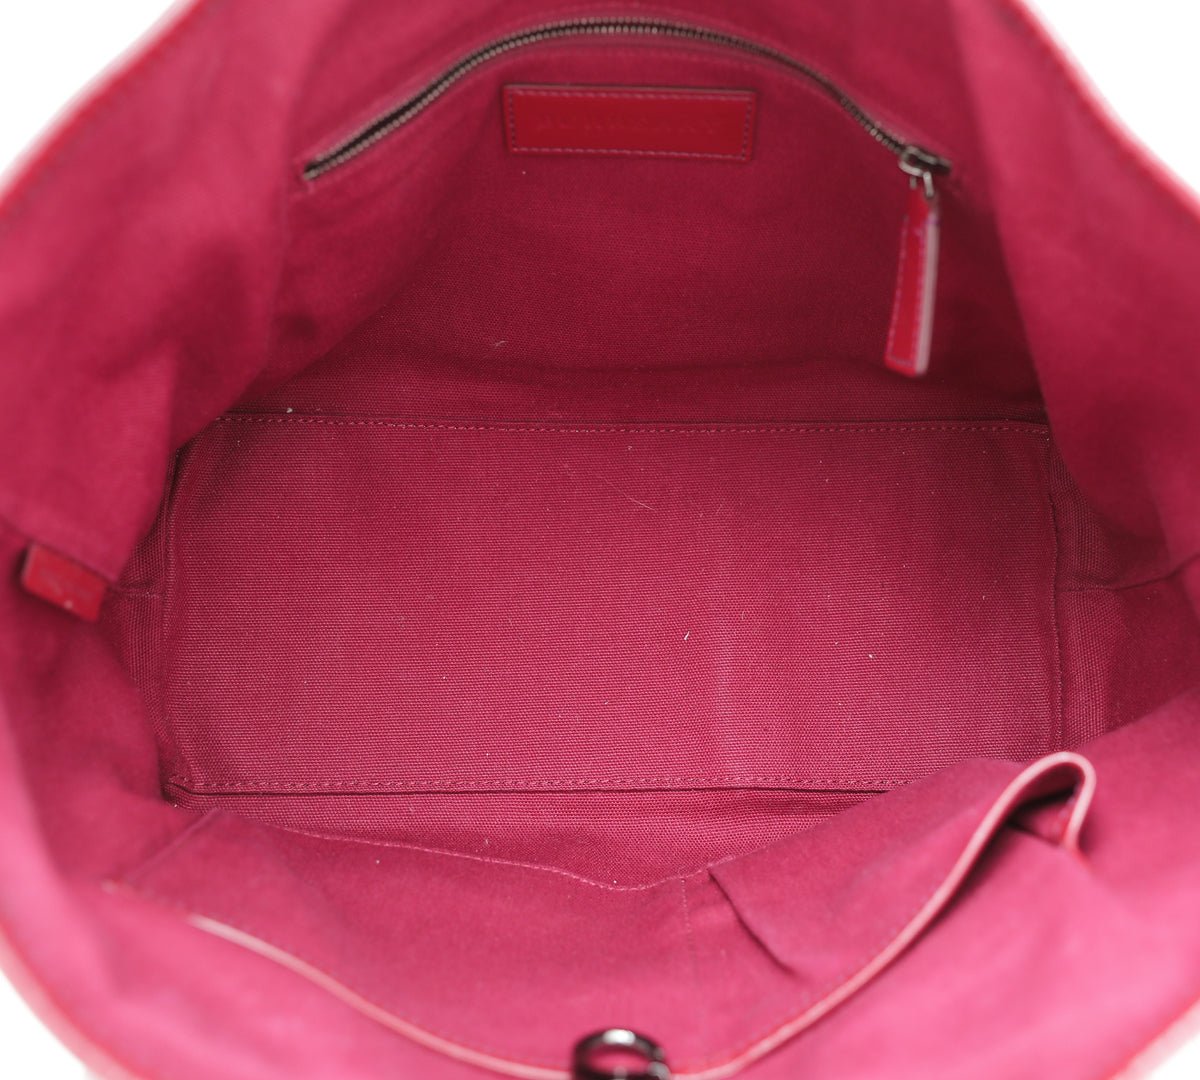 Burberry - Burberry Bicolor Nova Check PVC Tote Bag | The Closet